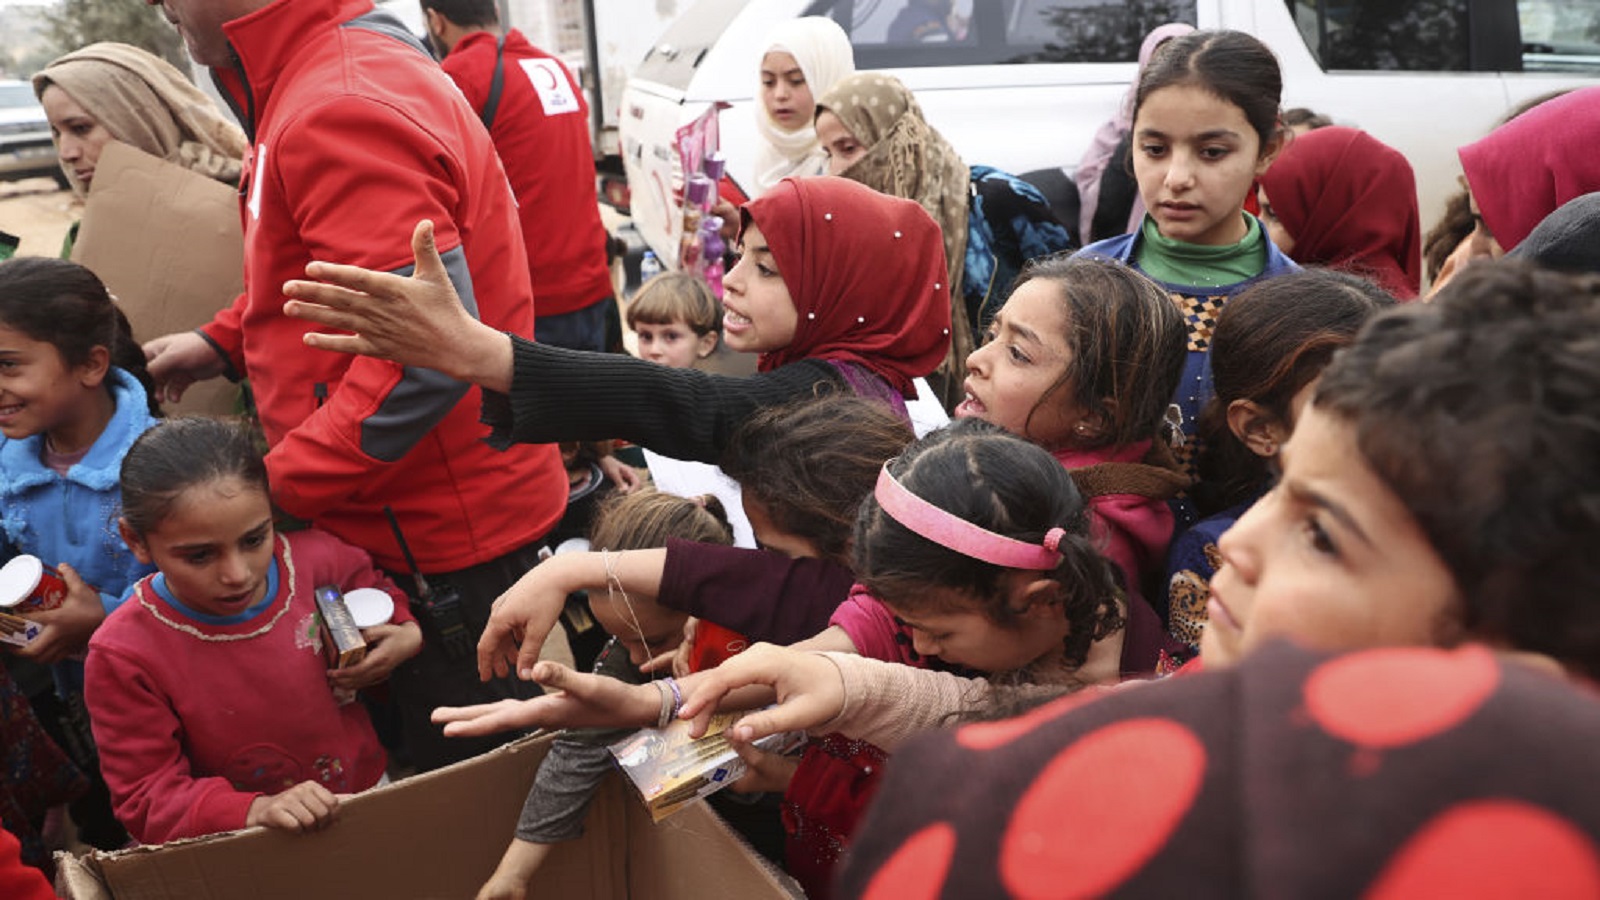 سوريا:الأمم المتحدة والنظام يتحملان مسؤولية تأخر المساعدات بعد الزلزال